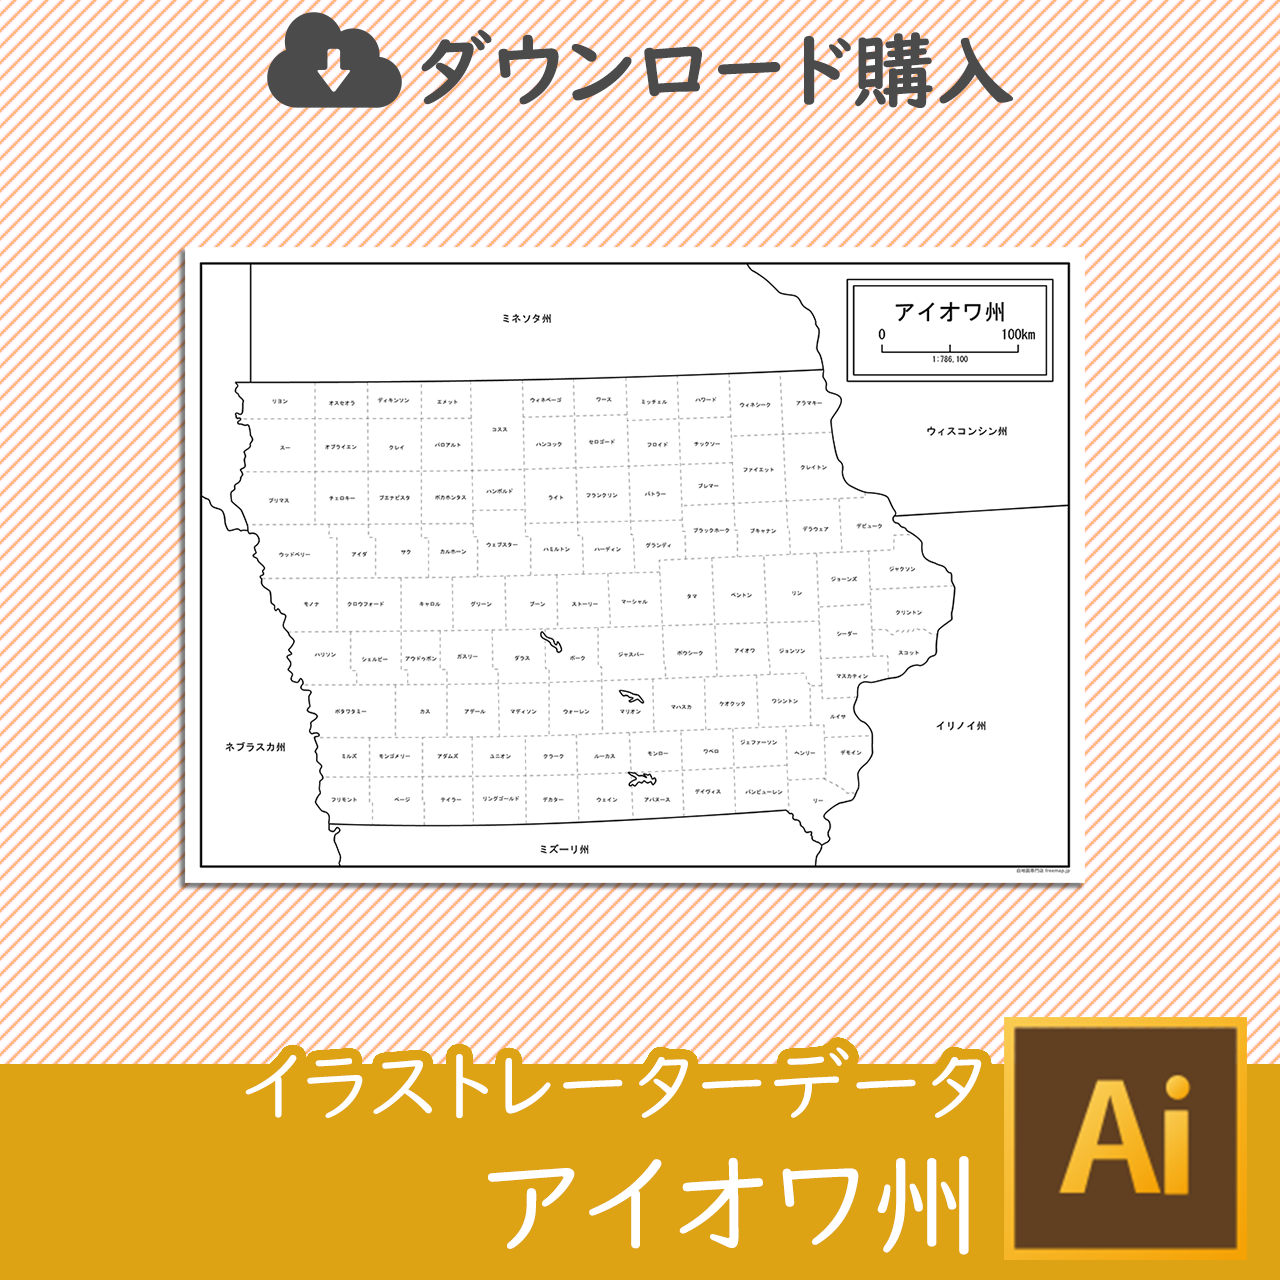 アイオワ州の白地図データのサムネイル画像